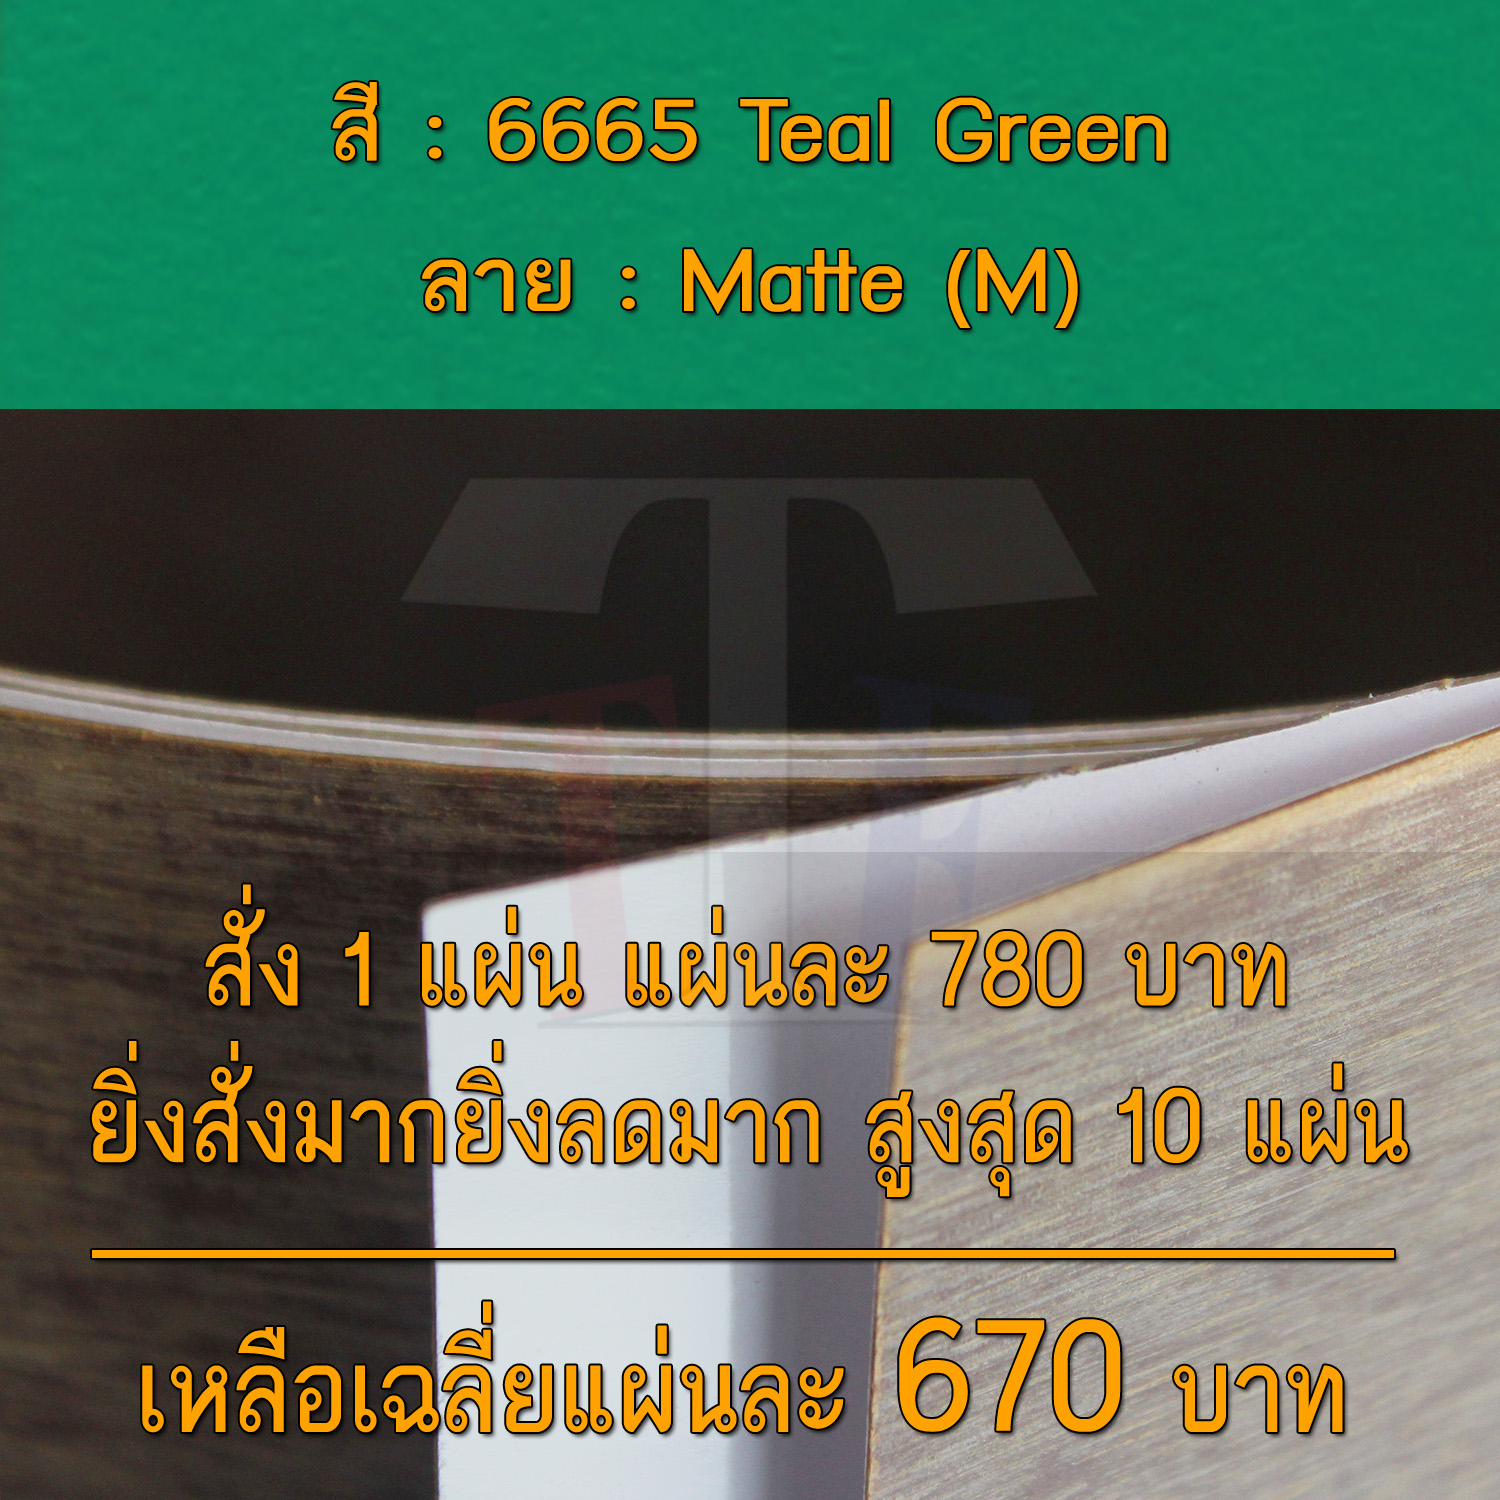 แผ่นโฟเมก้า แผ่นลามิเนต ยี่ห้อ TD Board สีเขียว รหัส 6665 Teal Green พื้นผิวลาย Matte (M) ขนาด 1220 x 2440 มม. หนา 0.70 มม. ใช้สำหรับงานตกแต่งภายใน งานปิดผิวเฟอร์นิเจอร์ ผนัง และอื่นๆ เพื่อเพิ่มความสวยงาม formica laminate 6665M